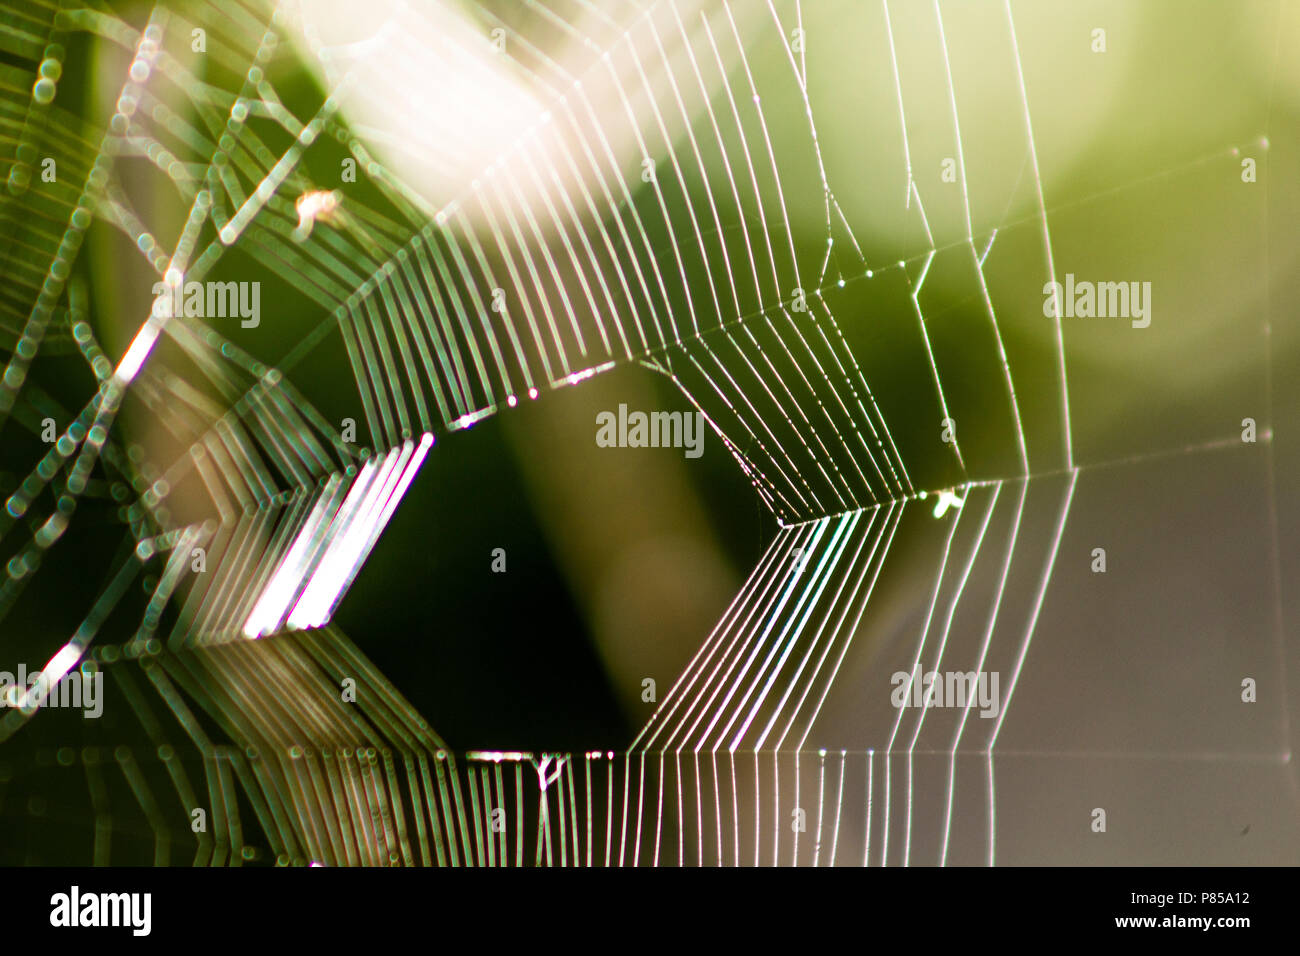 Ein Makro Bild von einem spider web/Cobweb mit einer geringen Tiefenschärfe gibt es eine schöne Unschärfe und Bokeh effect Stockfoto